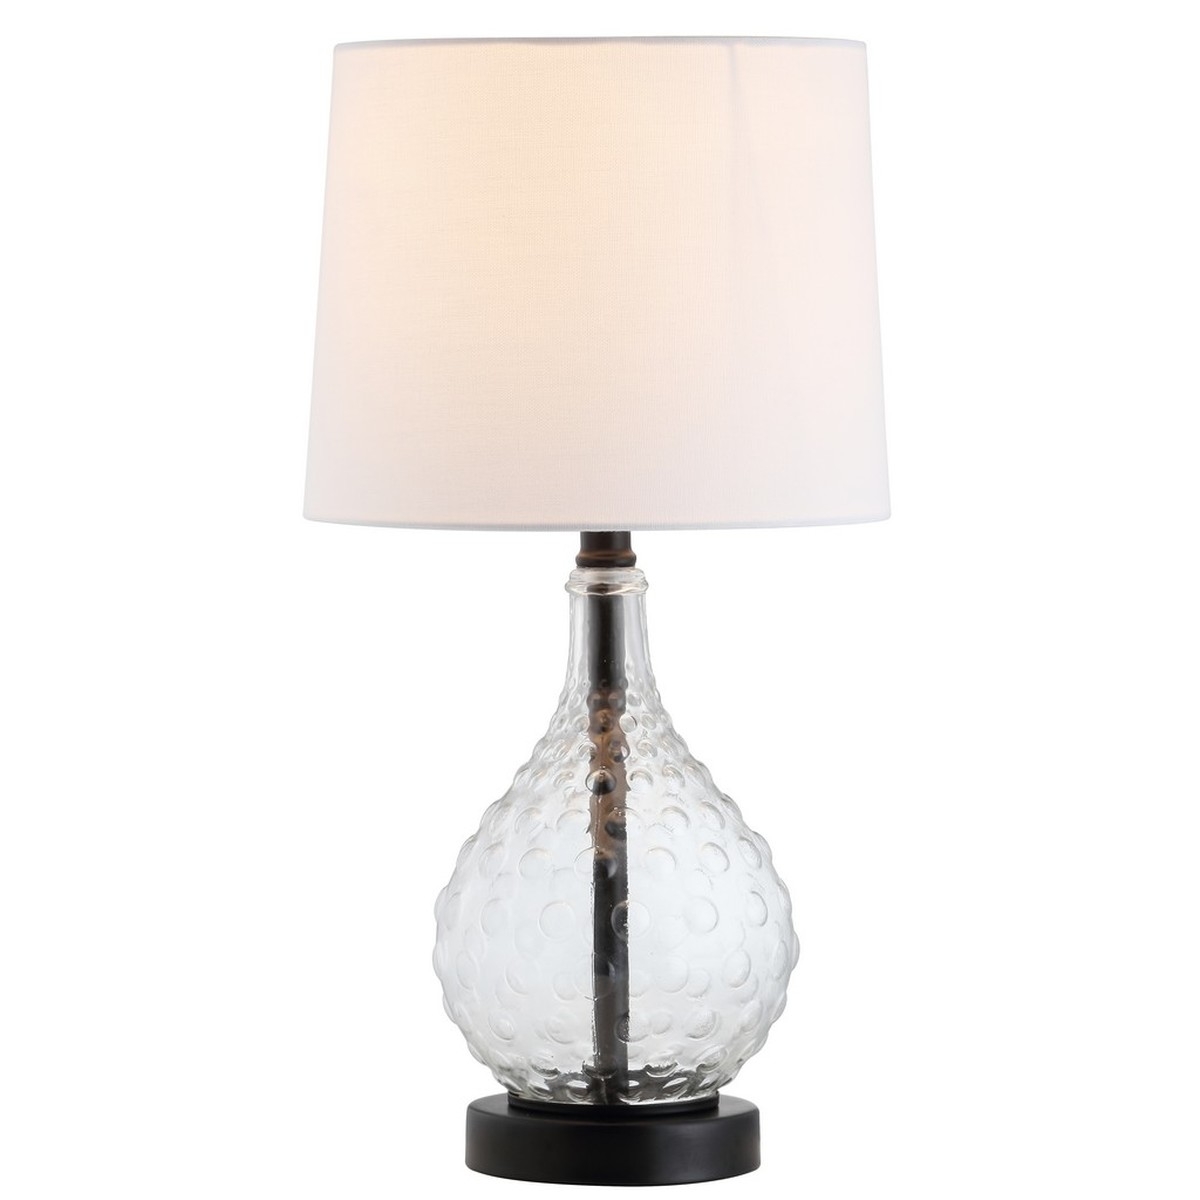 Targari Table Lamp - Black/Clear - Arlo Home - Image 1